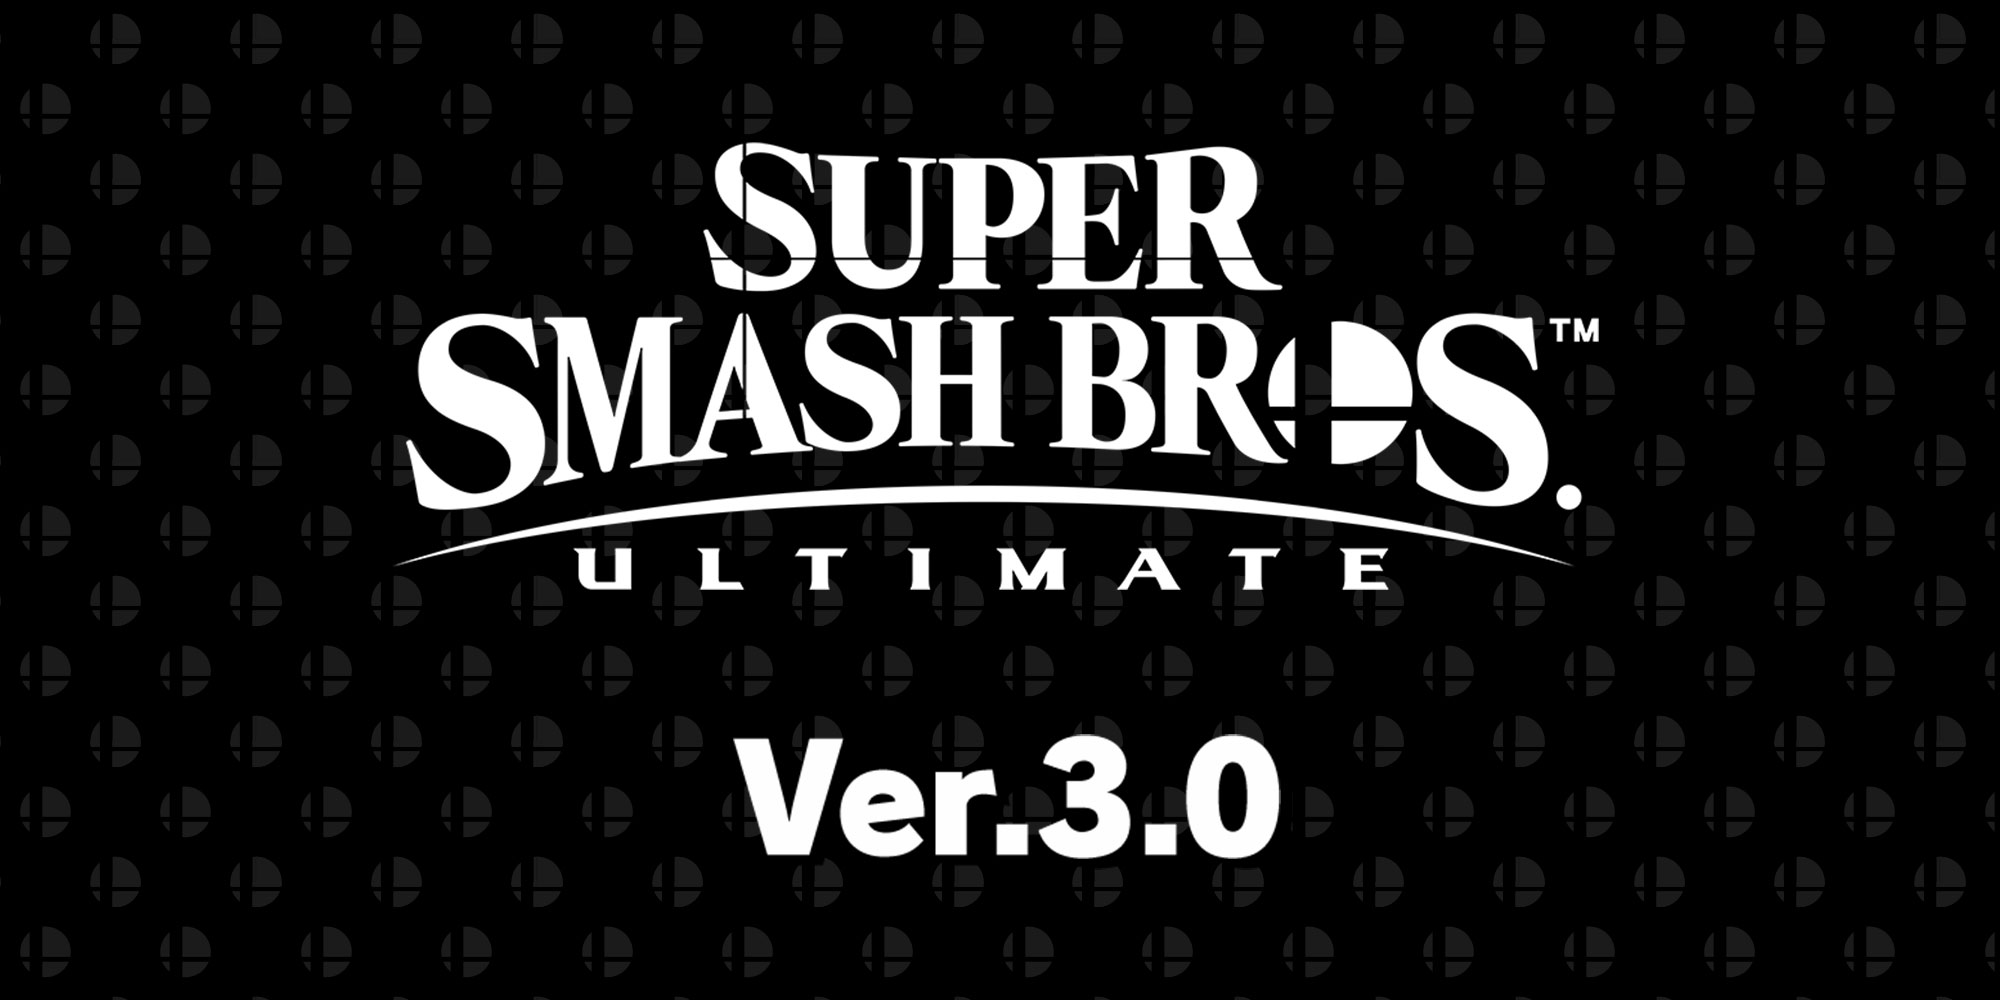 Джокер из Persona 5 появится в Super Smash Bros. Ultimate 18 апреля! топ игры sega / сега онлайн и денди играть